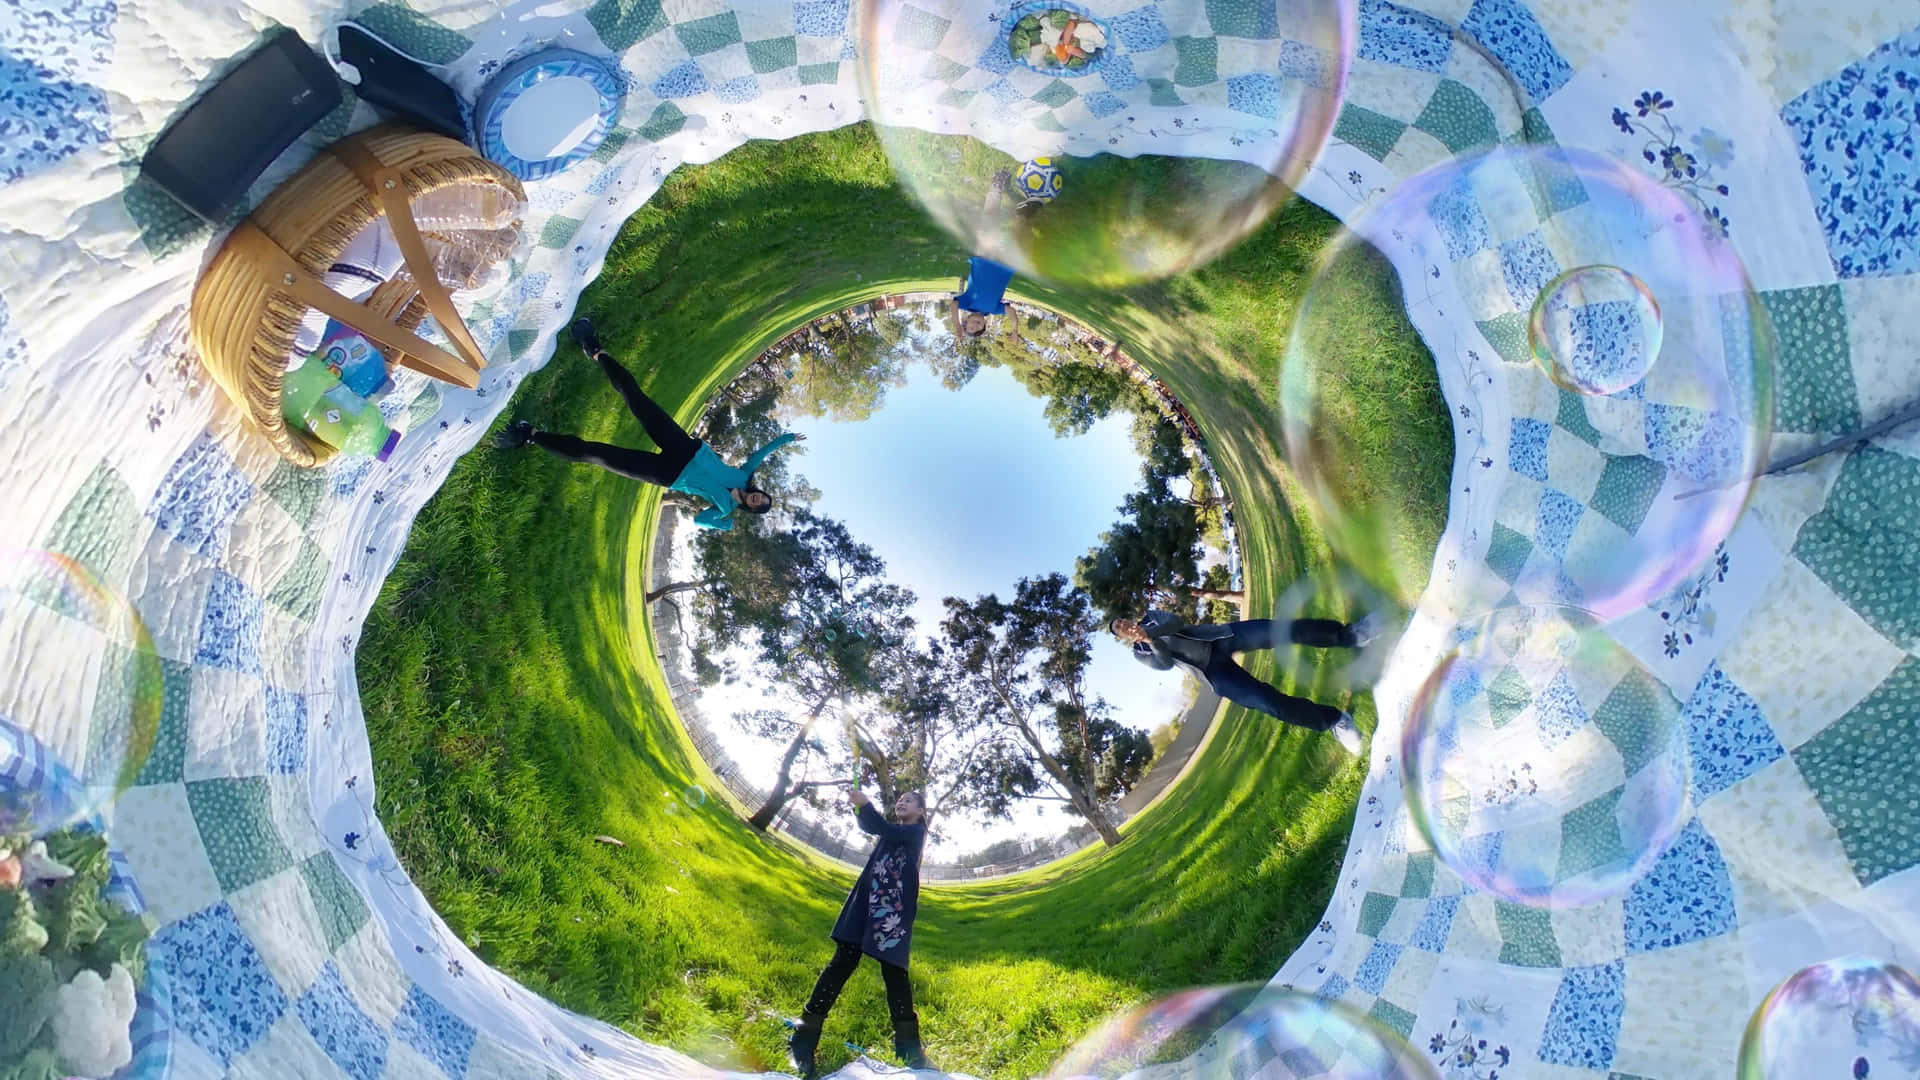 Picnic Bubbles 360 Degree Picture